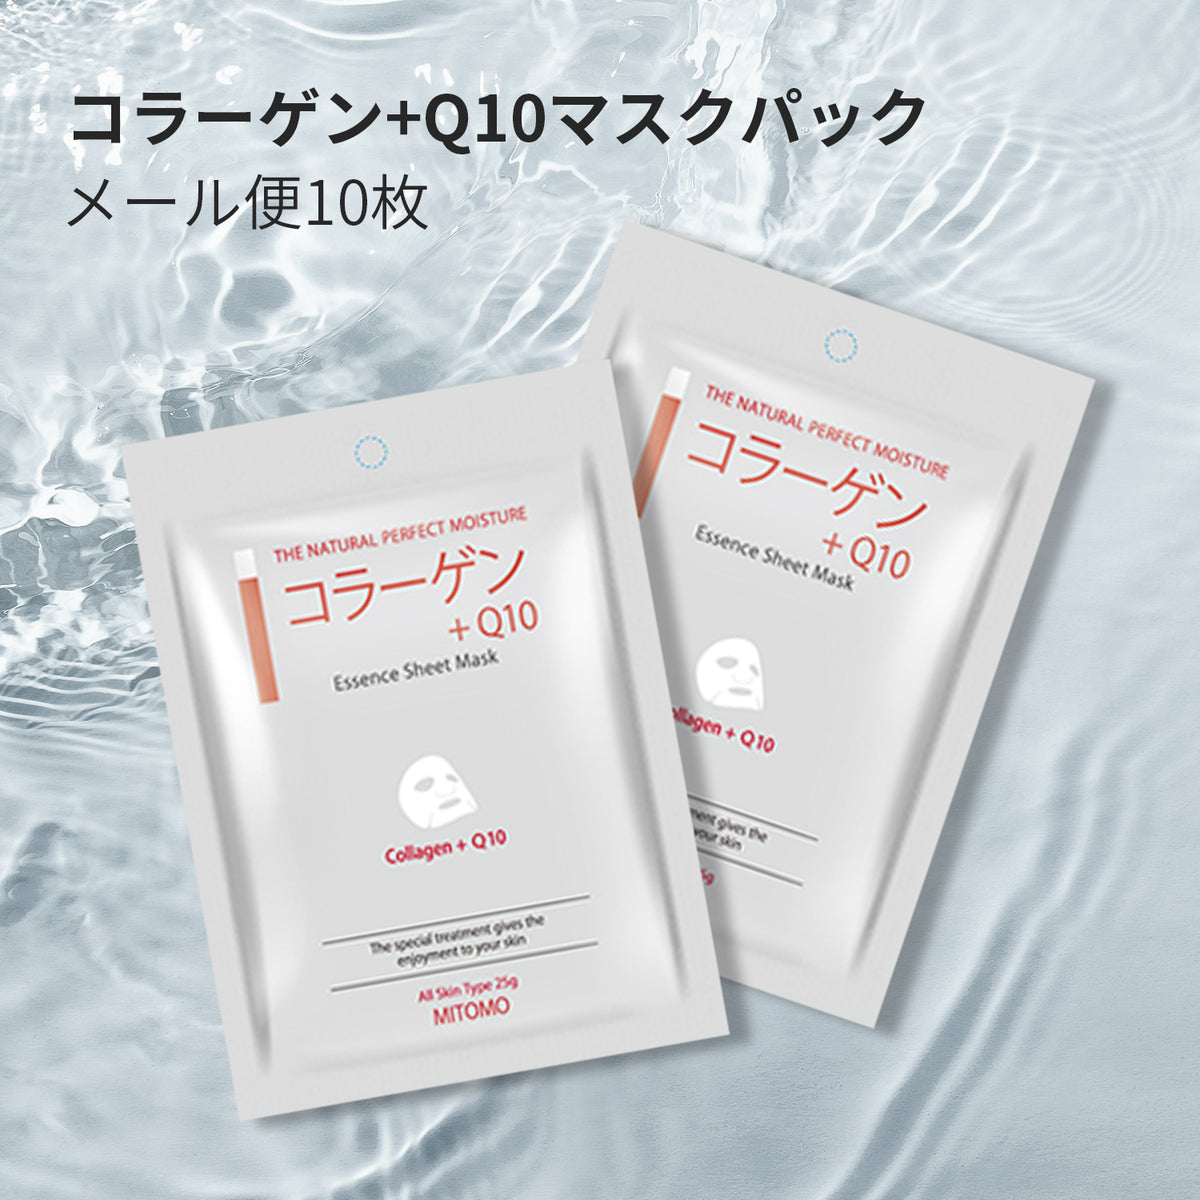 フェイスパック マスクパック コラーゲン Q10 – MITOMO Japan